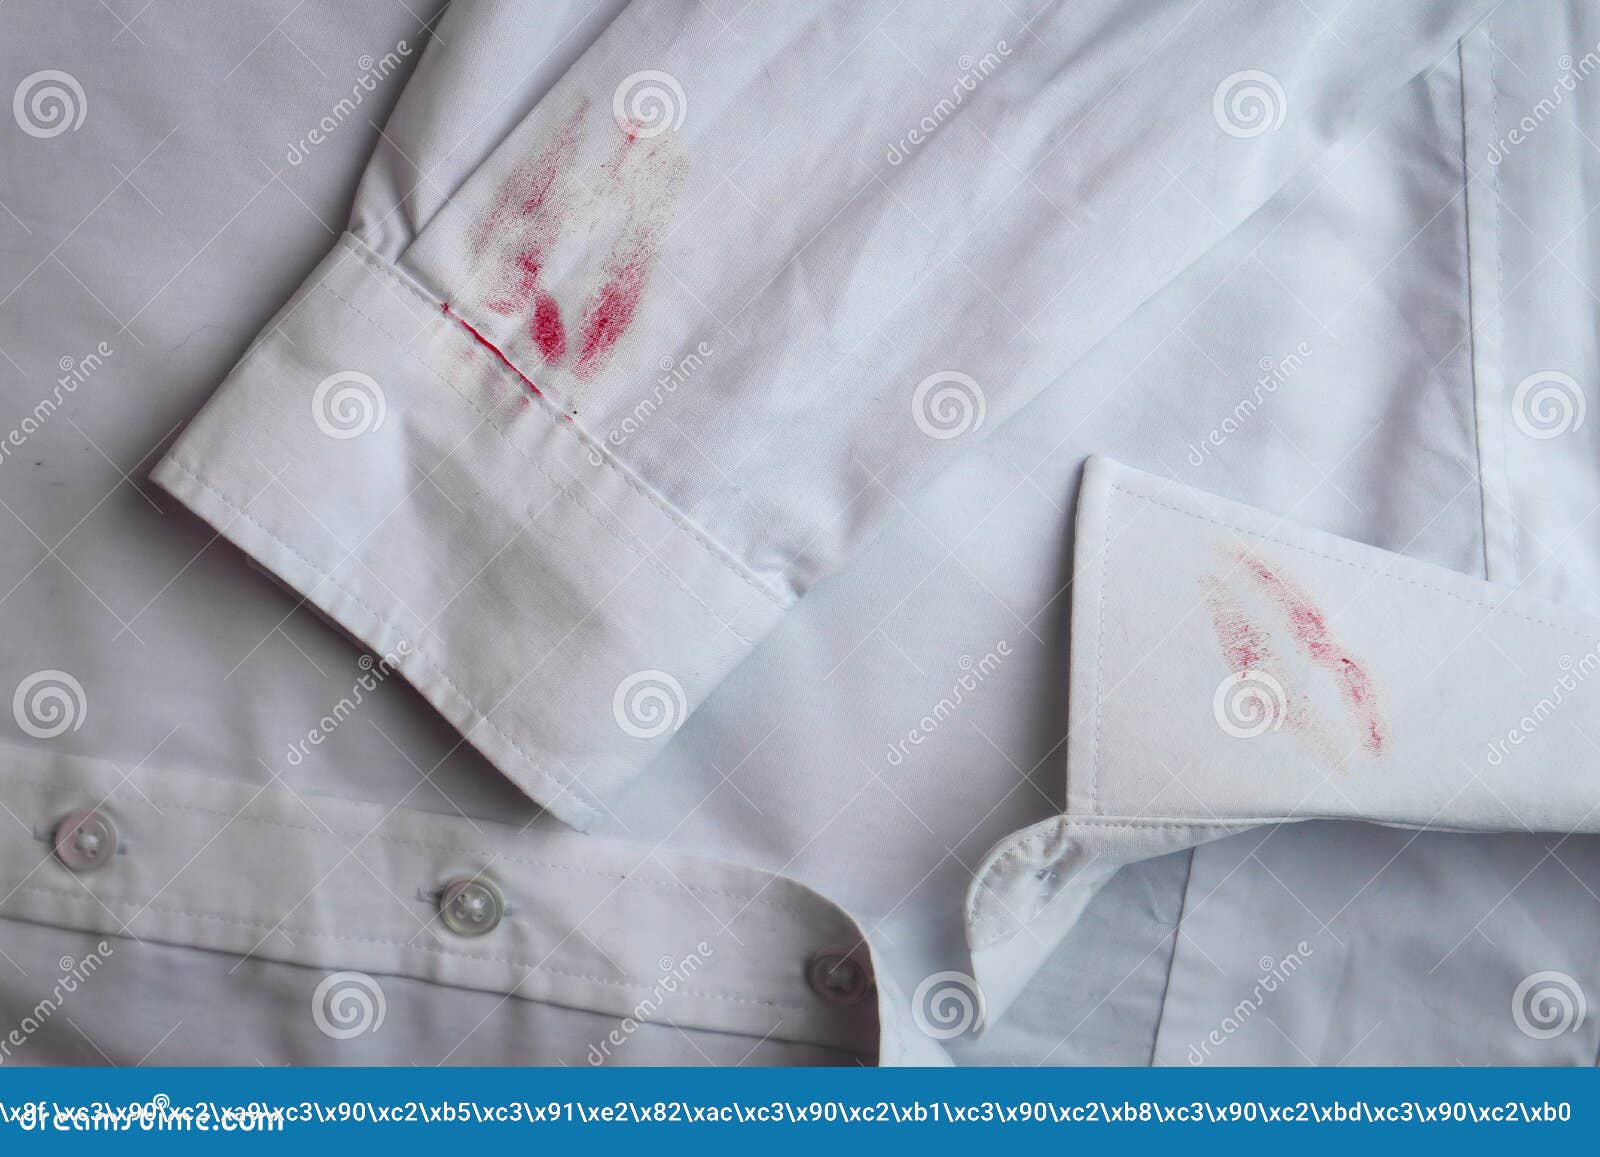 Mancha Sucia De Lápiz Labial En Camisa Blanca Concepto De Remover De Manchas  Foto de archivo - Imagen de fundas, ropas: 161477574